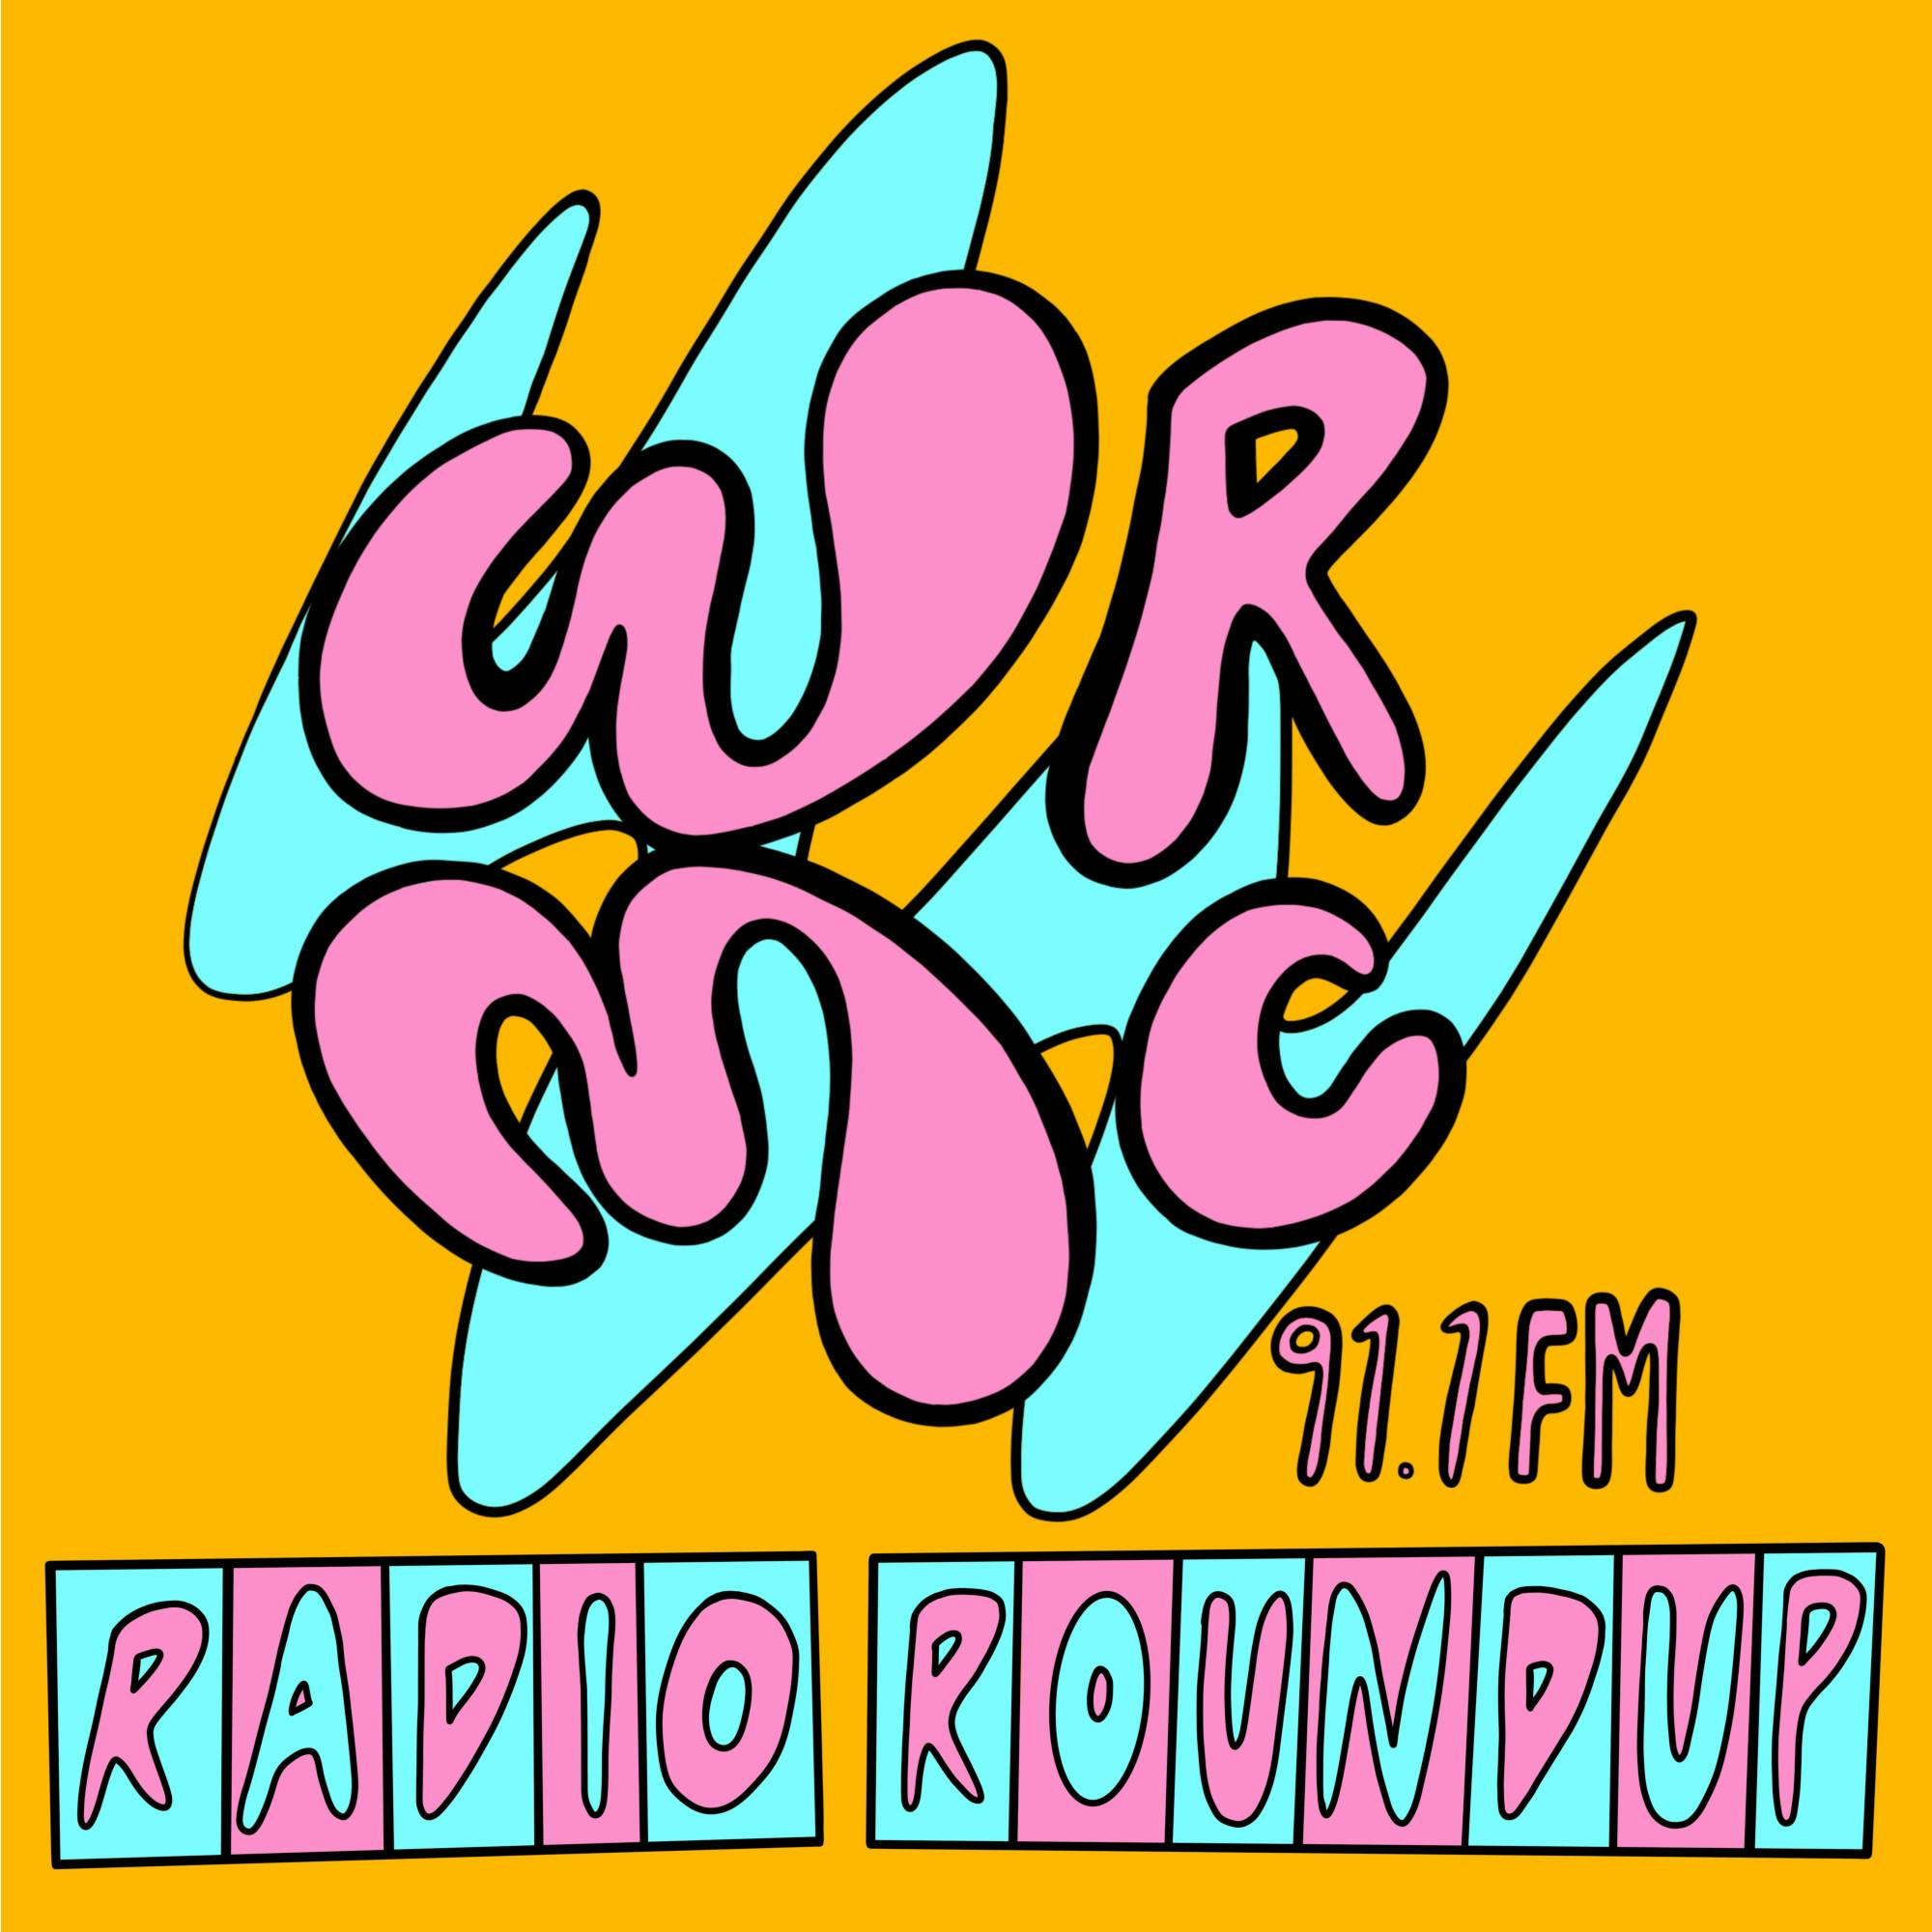 WRMC Radio Roundup by Pia Contreras.jpg